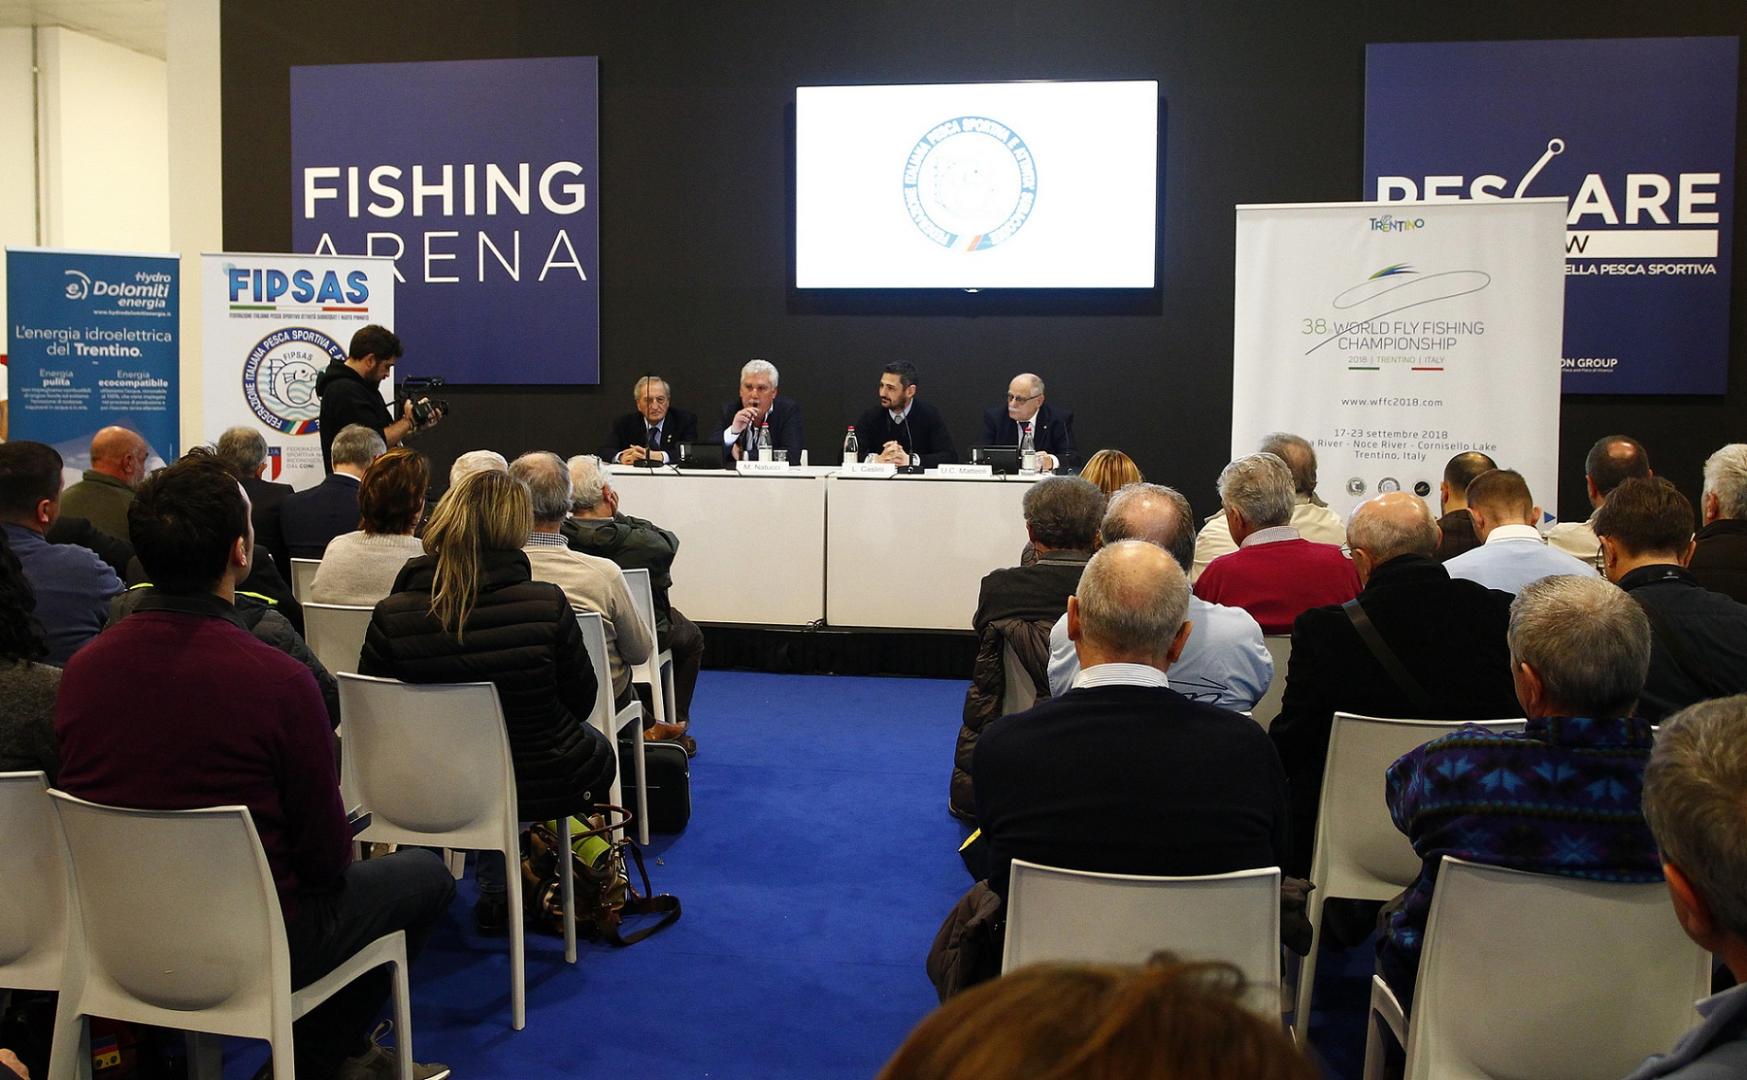 A Pescare Show la presentazione dei sette Campionati Mondiali di pesca sportiva che si disputeranno in Italia nel 2018